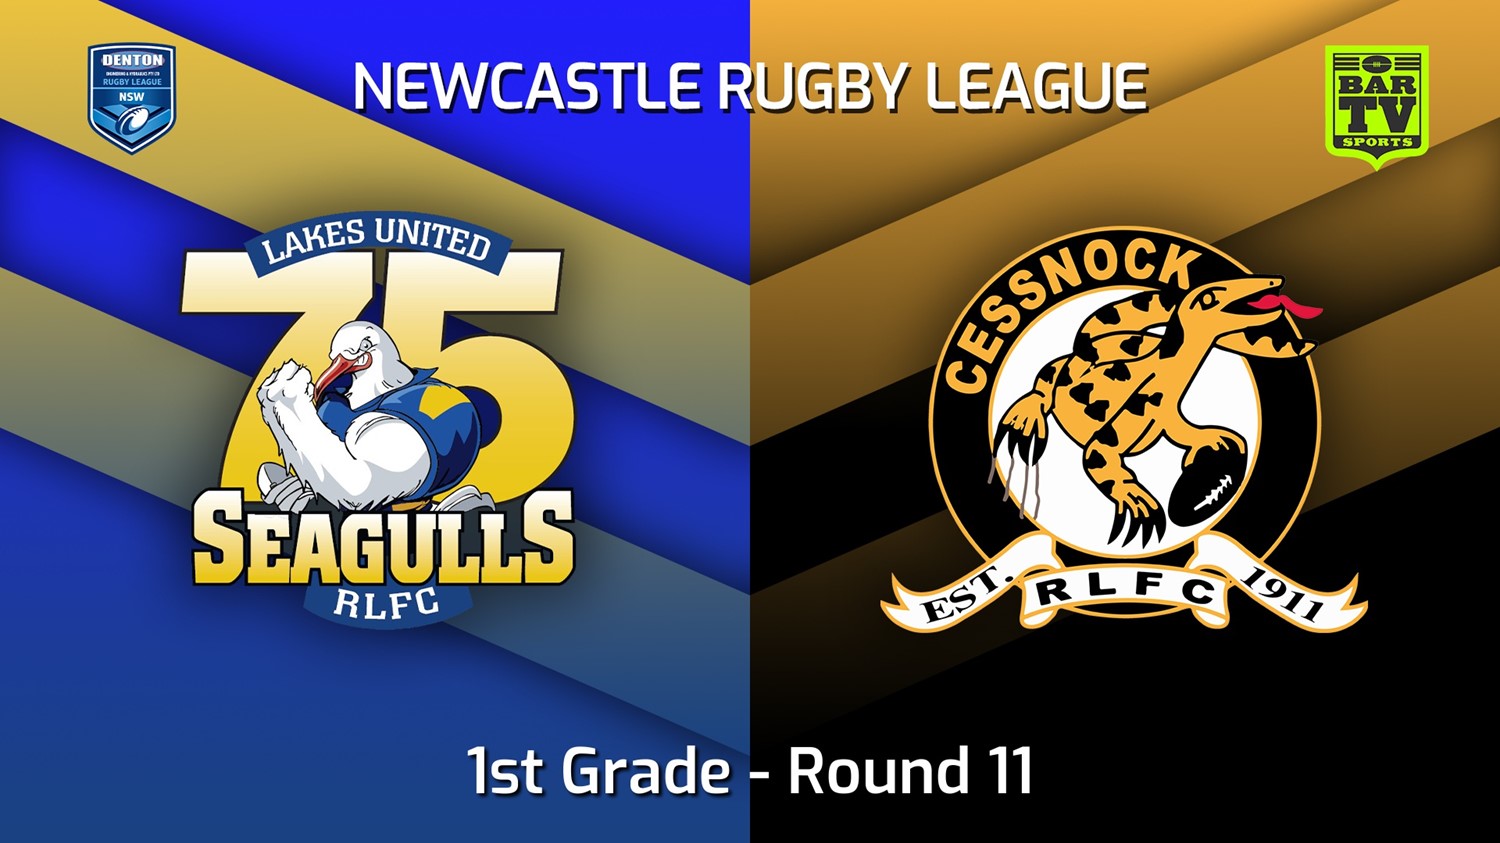 220612-Newcastle Round 11 - 1st Grade - Lakes United v Cessnock Goannas Slate Image